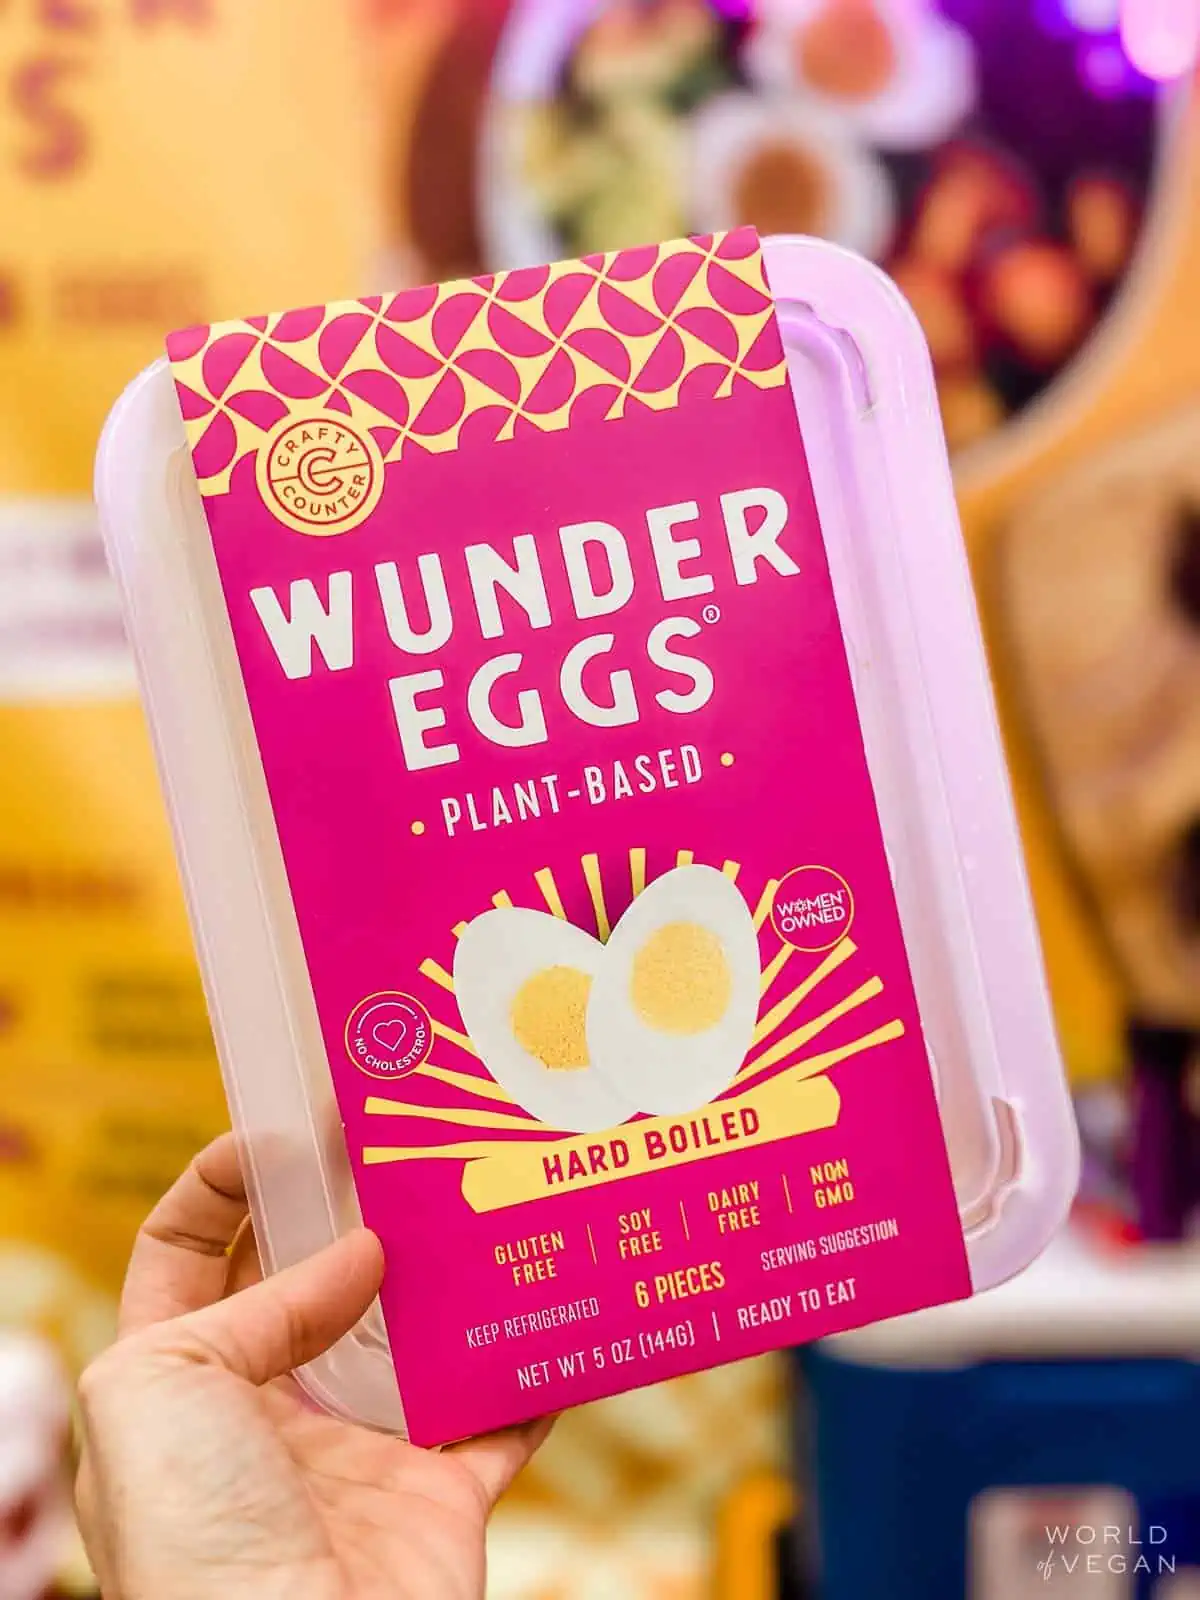 Carton of vegan Wunder Eggs.